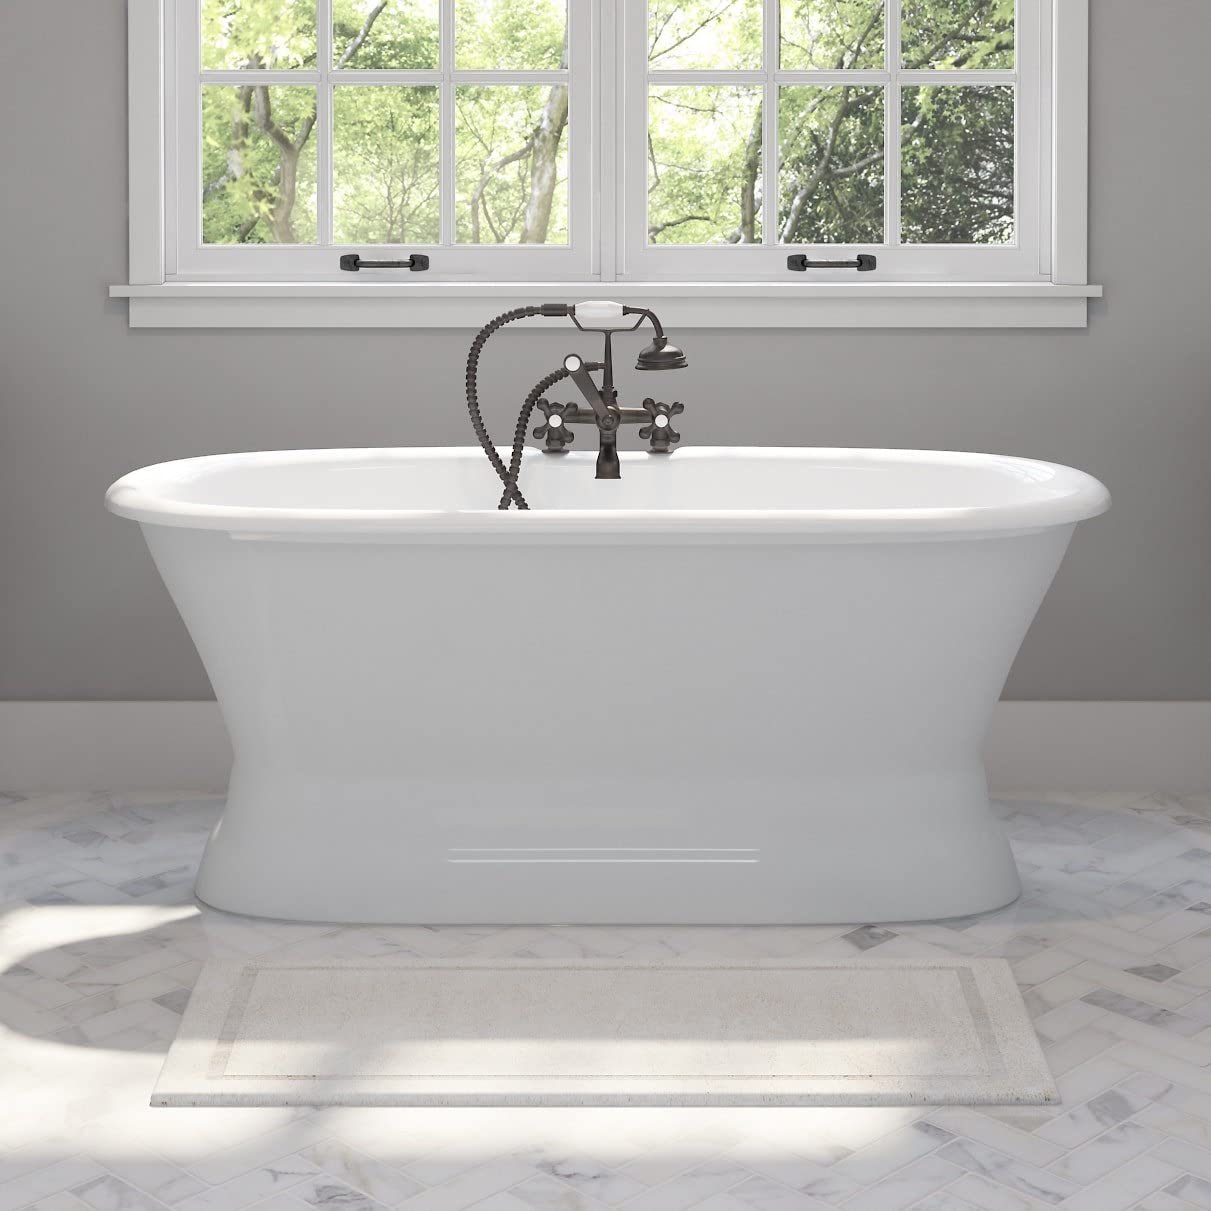 Bồn tắm bằng chất liệu sứ trắng cho cảm giác vô cùng sáng bóng, lại dễ dàng vệ sinh sạch sẽ sau khi sử dụng. Các chi tiết vòi nước và hoa sen được thiết kế theo phong cách cổ điển nổi bật trên nền trắng mang đến sức hấp dẫn vượt thời gian.